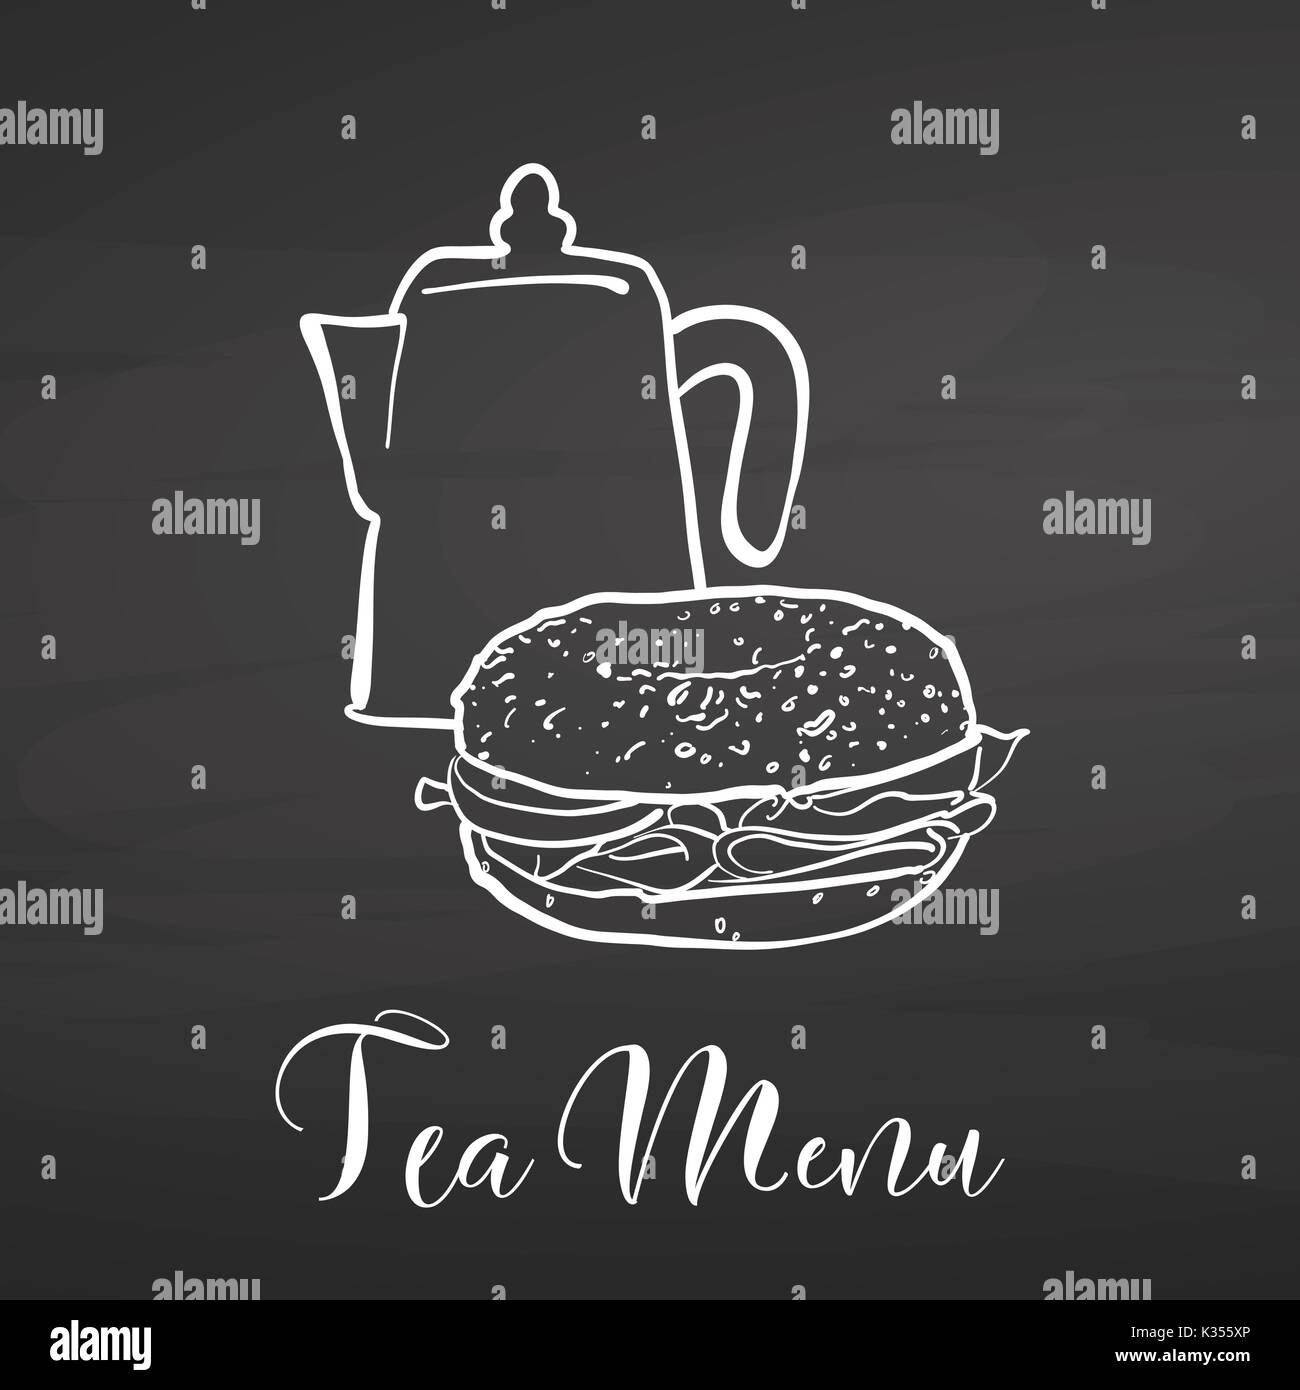 Menu di tè con bagel sulla lavagna. disegnati a mano il cibo sano schizzo in bianco e nero per il disegno vettoriale sulla lavagna. Illustrazione Vettoriale